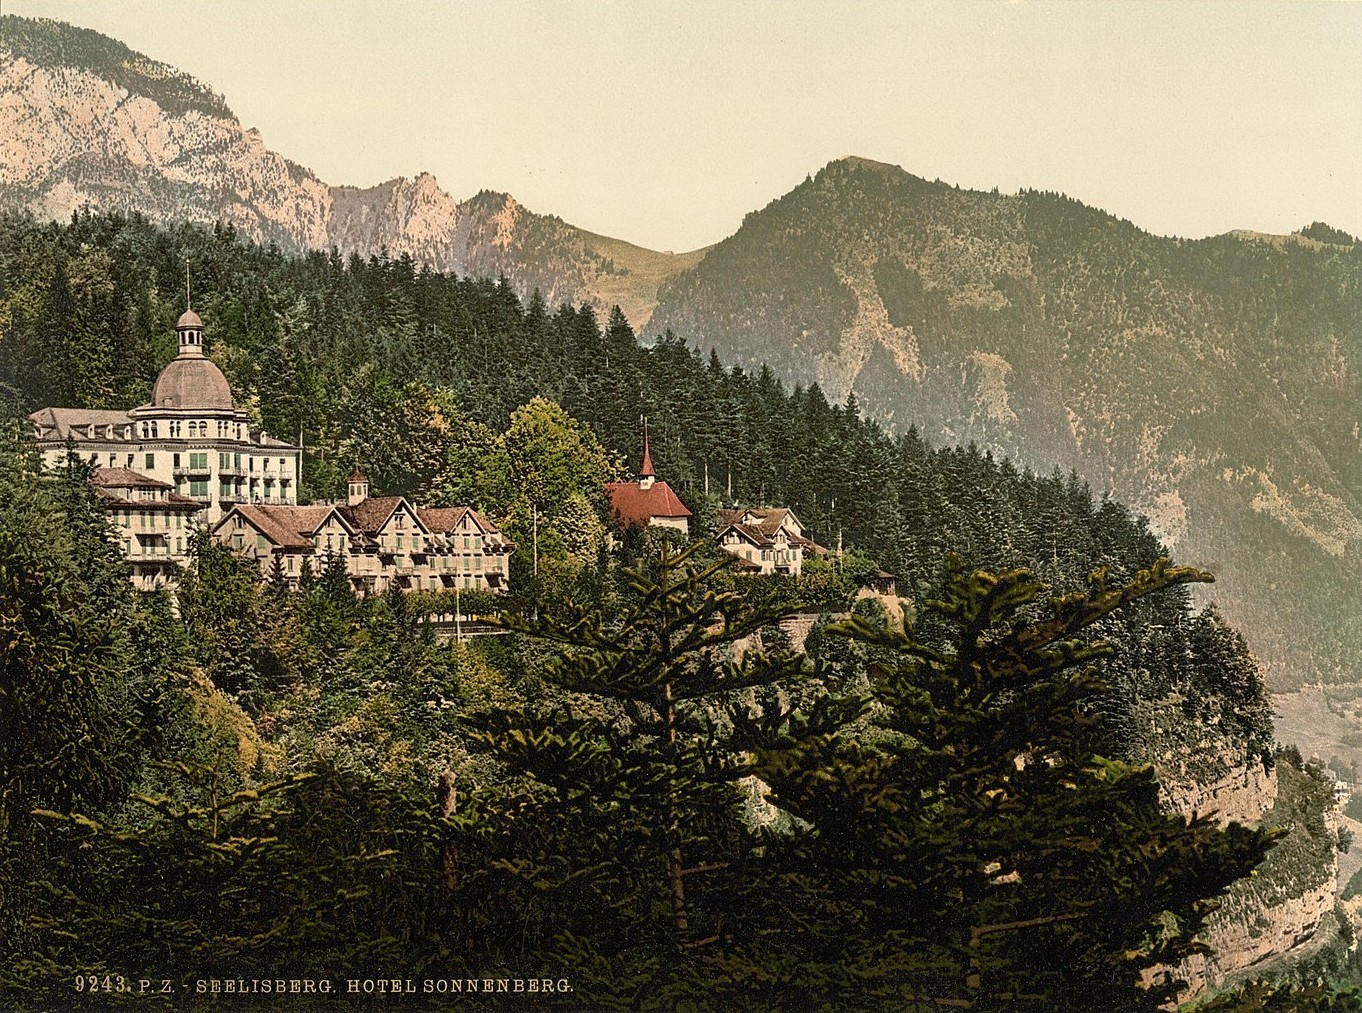 Vue de l'établissement de cure Sonnenberg à Seelisberg vers 1900. La propriété est actuellement  en attente d'importantes rénovations afin de pouvoir devenir un lieu touristique.